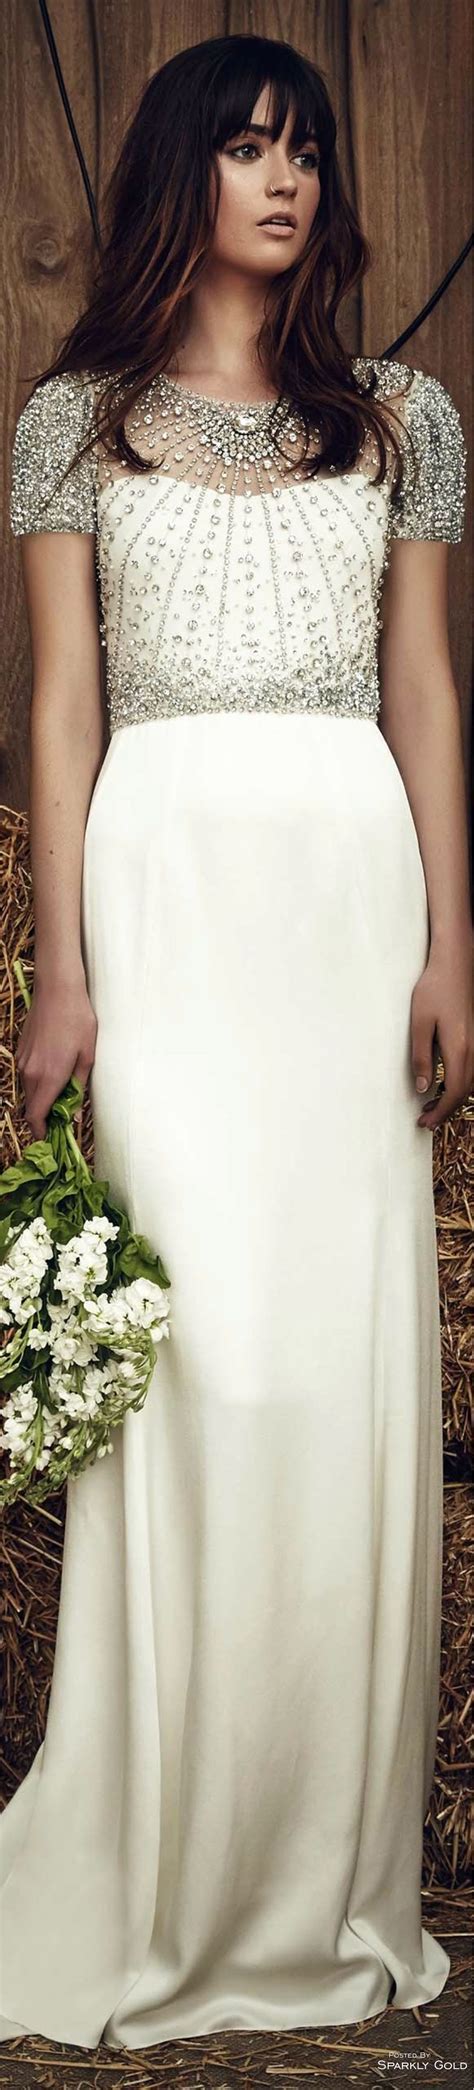 Jenny Packham Spring 2017 Bridal Wedding Dresses Beautiful Wedding